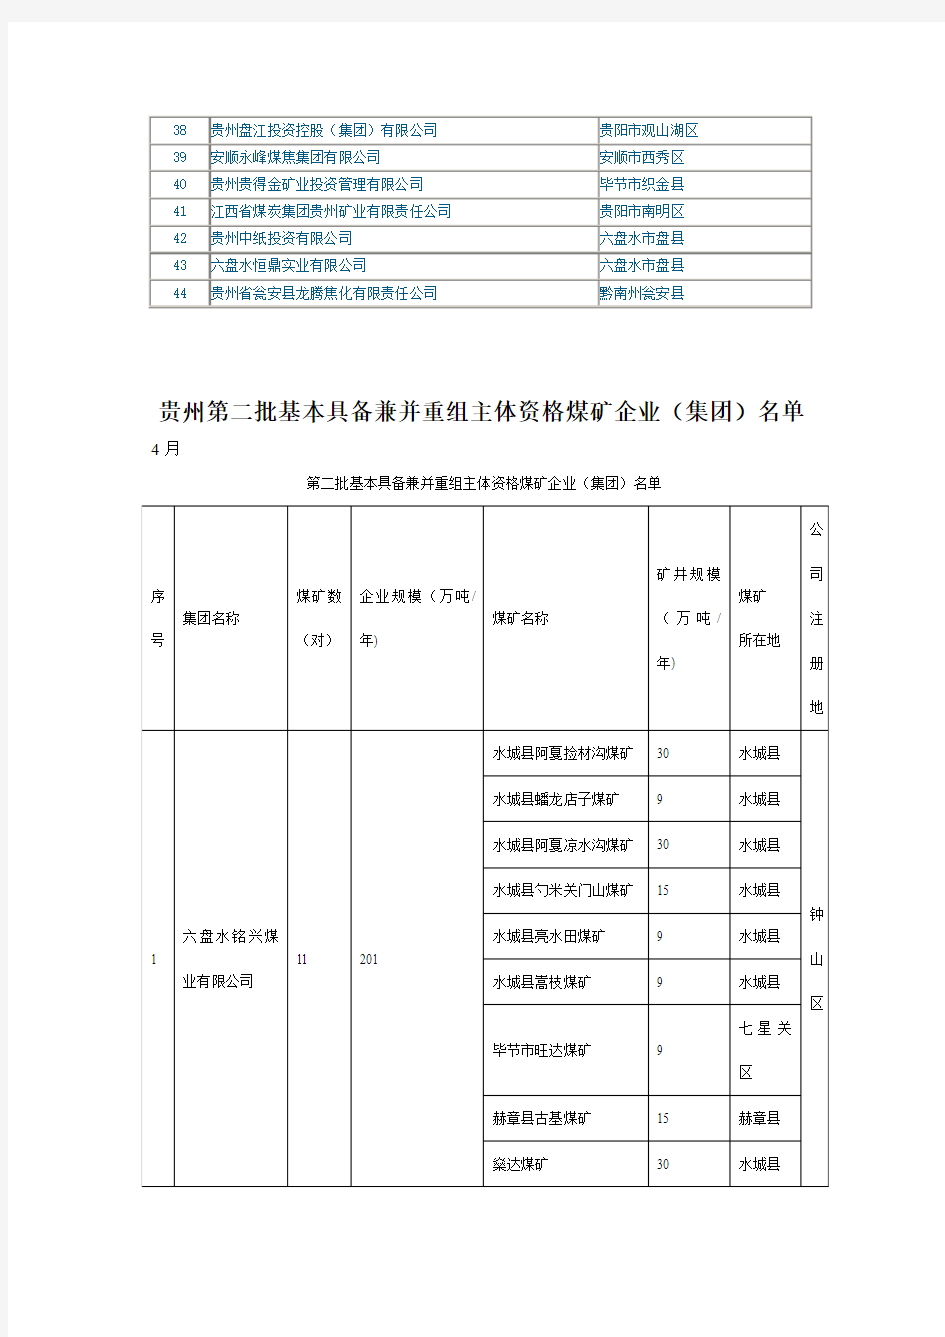 贵州第一、二批基本具备兼并重组主体资格煤矿企业(集团)名单2013.4